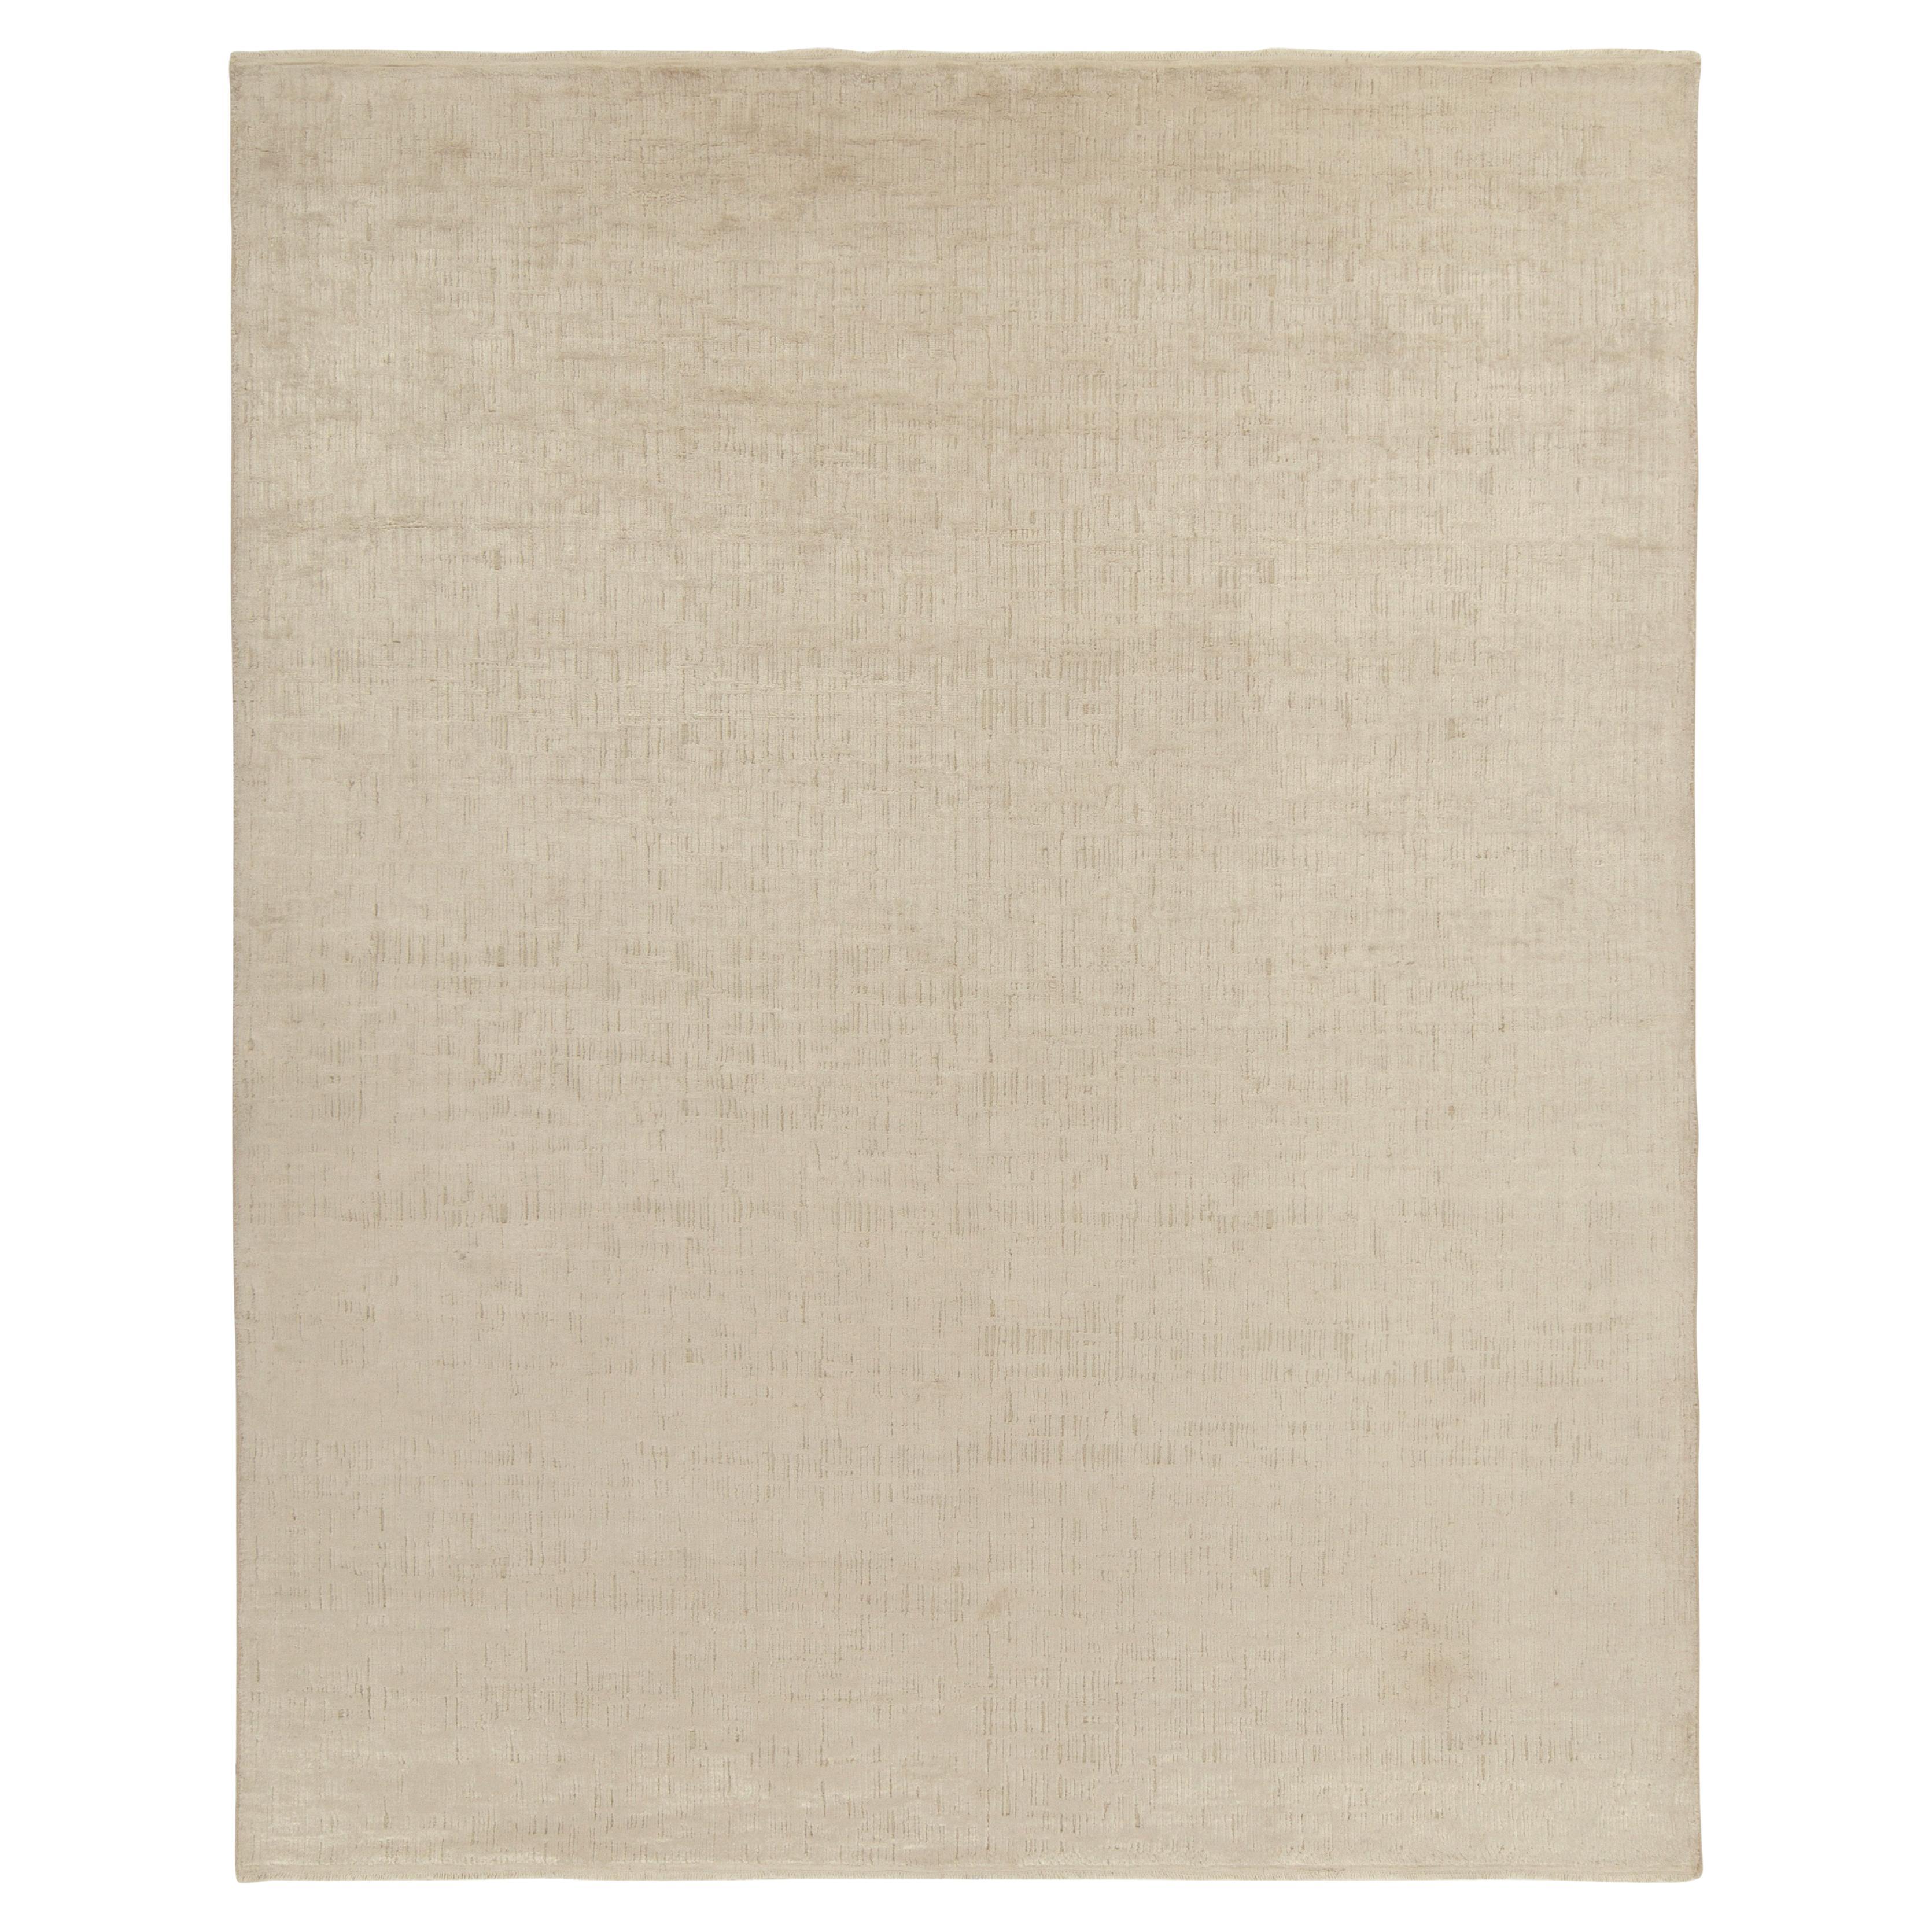 Tapis contemporain Kilims & Kilims beige et blanc cassé, réversible